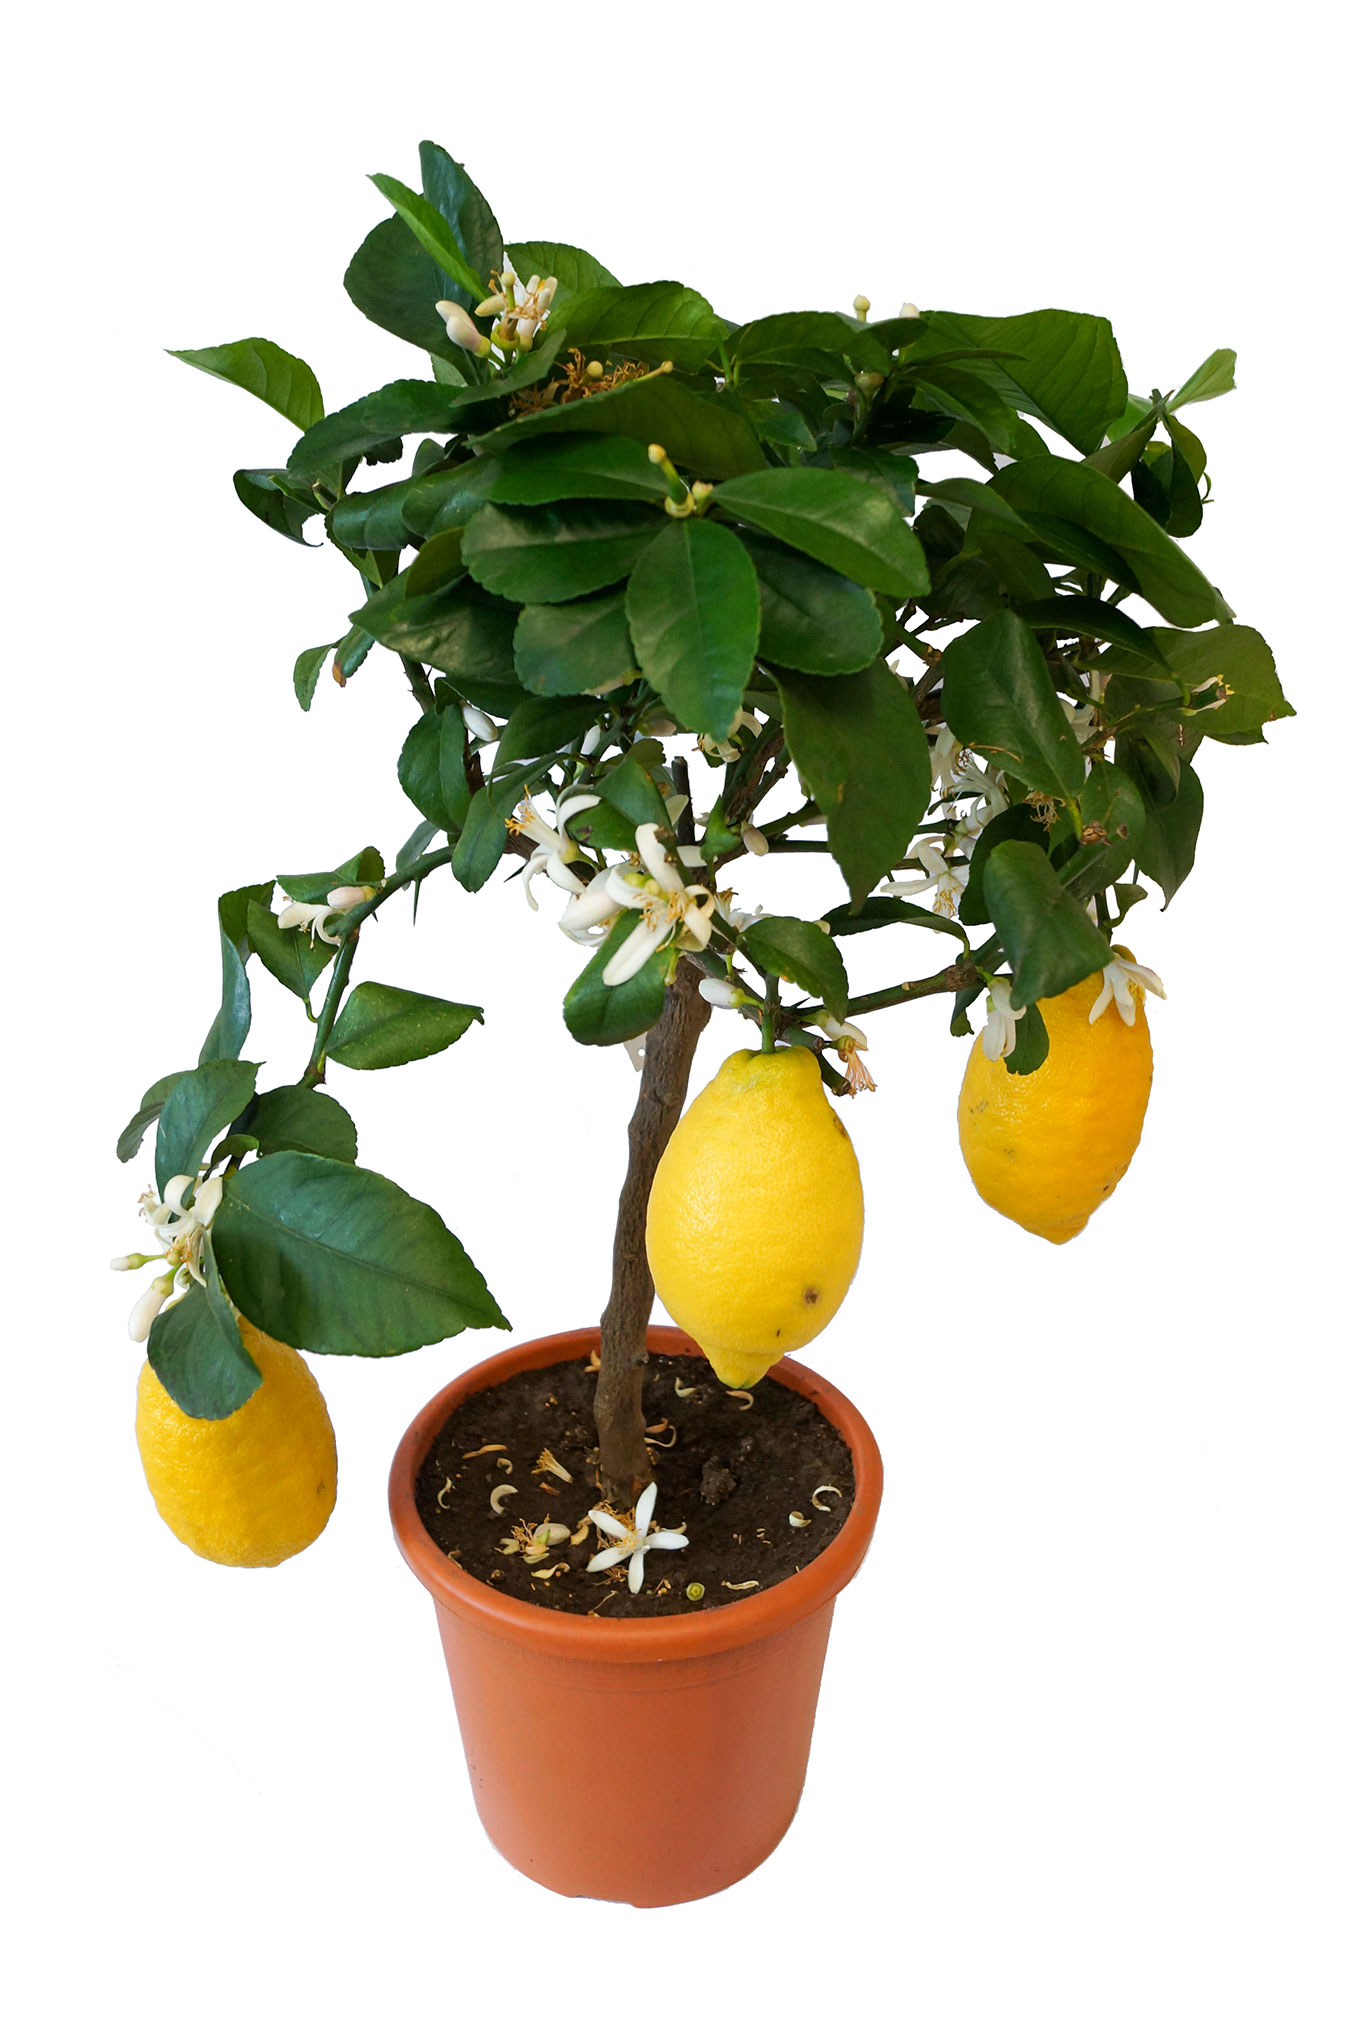 Zitrone - Citrus limon